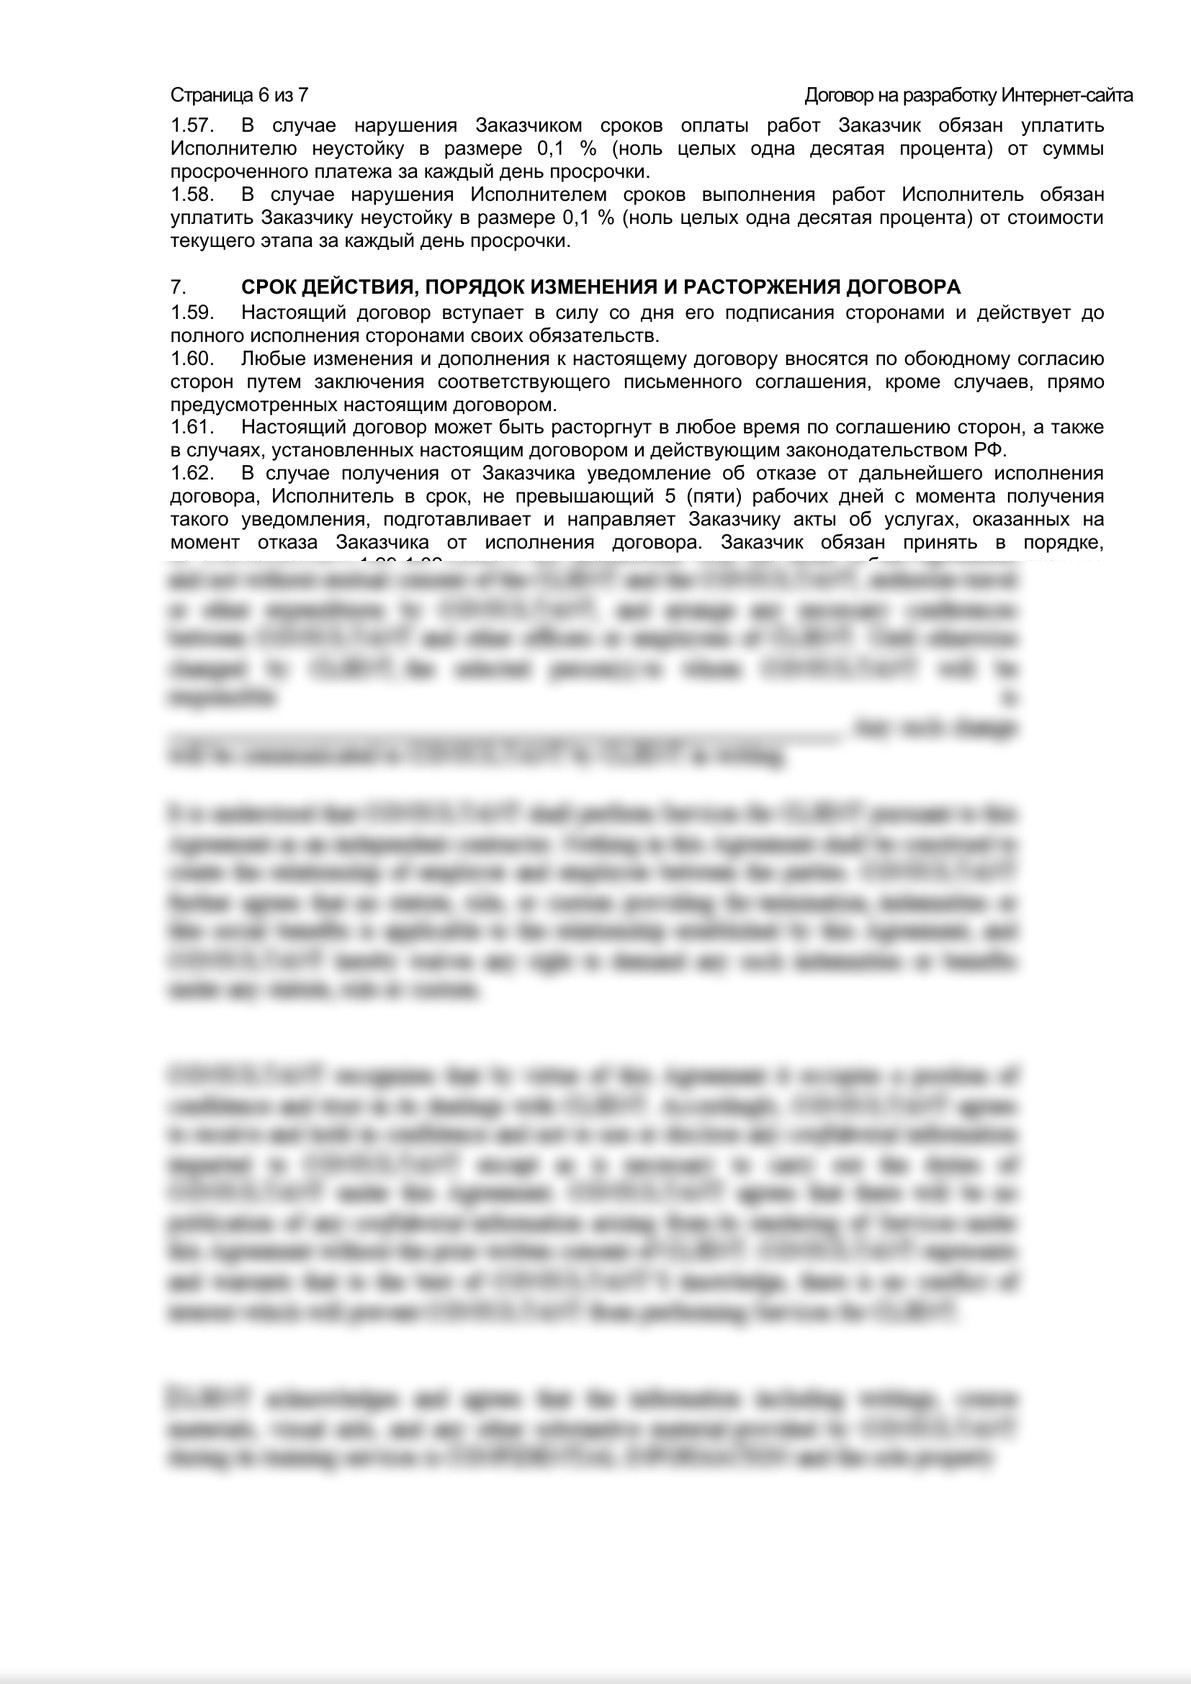 Шаблон договора на разработку Интернет-сайта-5